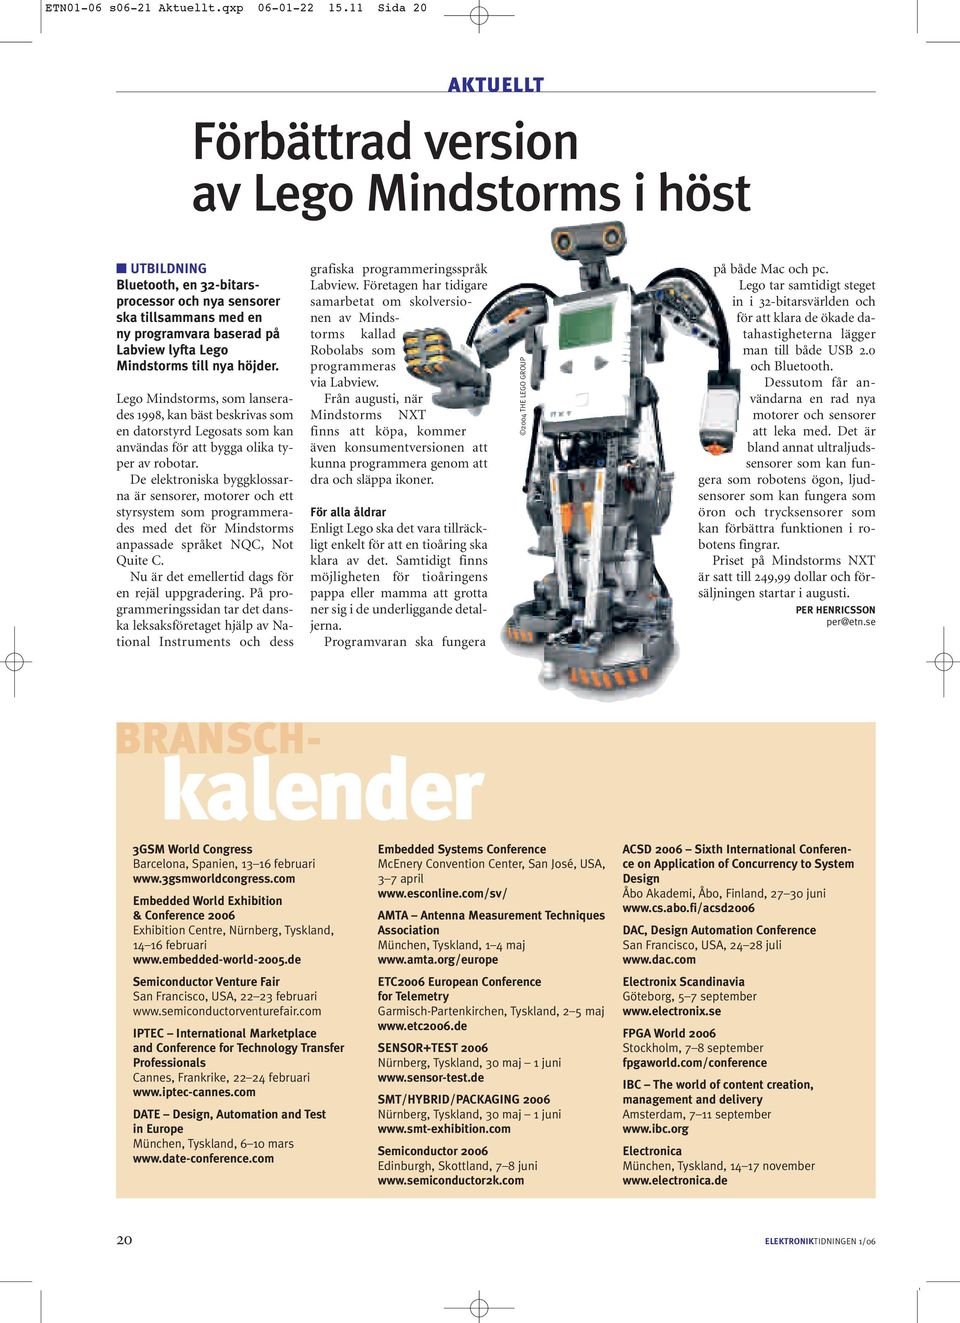 Mindstorms till nya höjder. Lego Mindstorms, som lanserades 1998, kan bäst beskrivas som en datorstyrd Legosats som kan användas för att bygga olika typer av robotar.